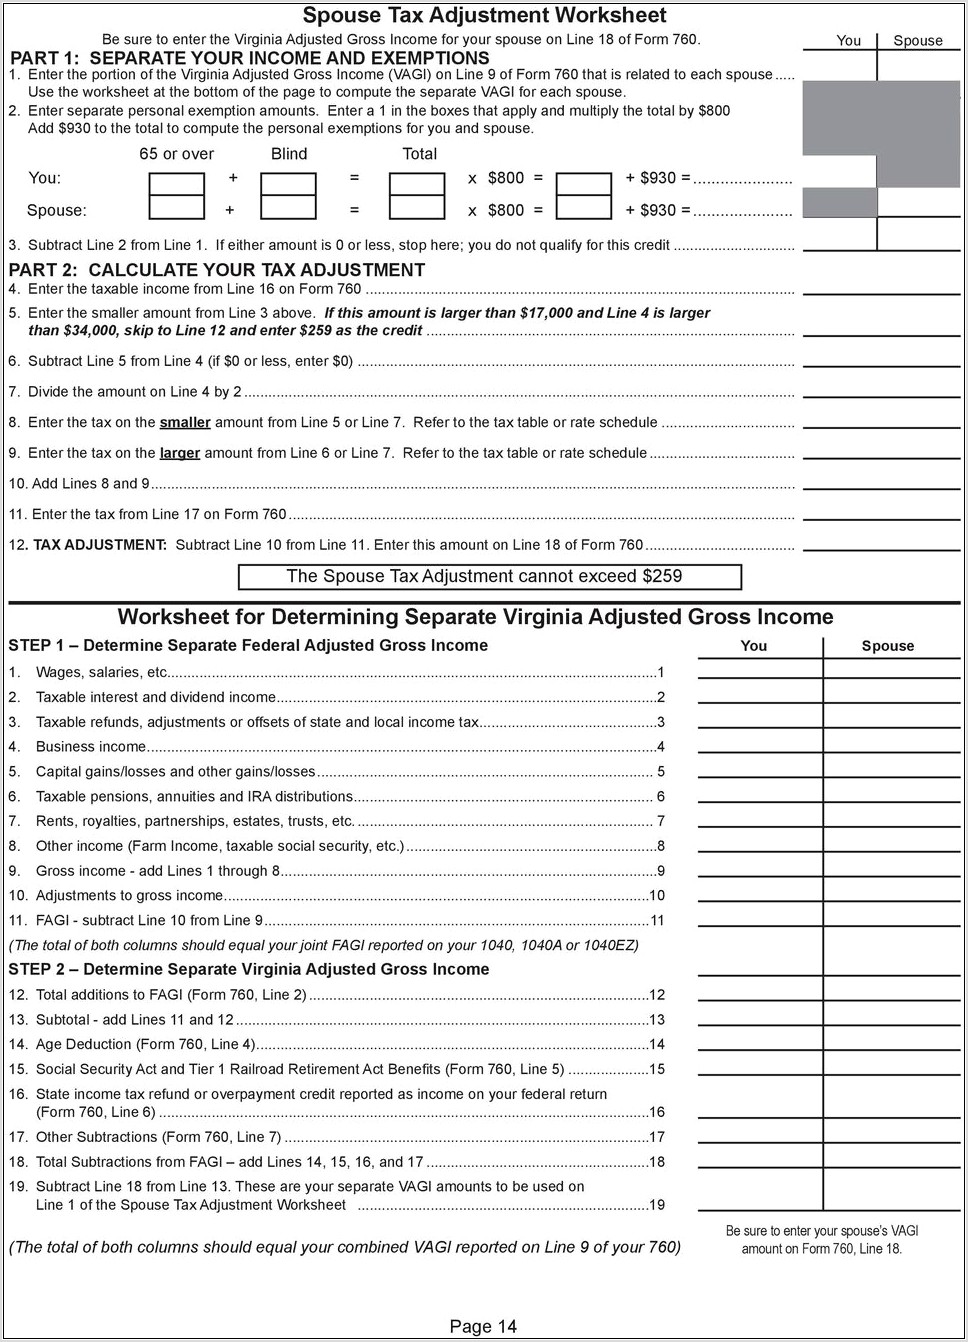 Spouse Tax Adjustment Worksheet